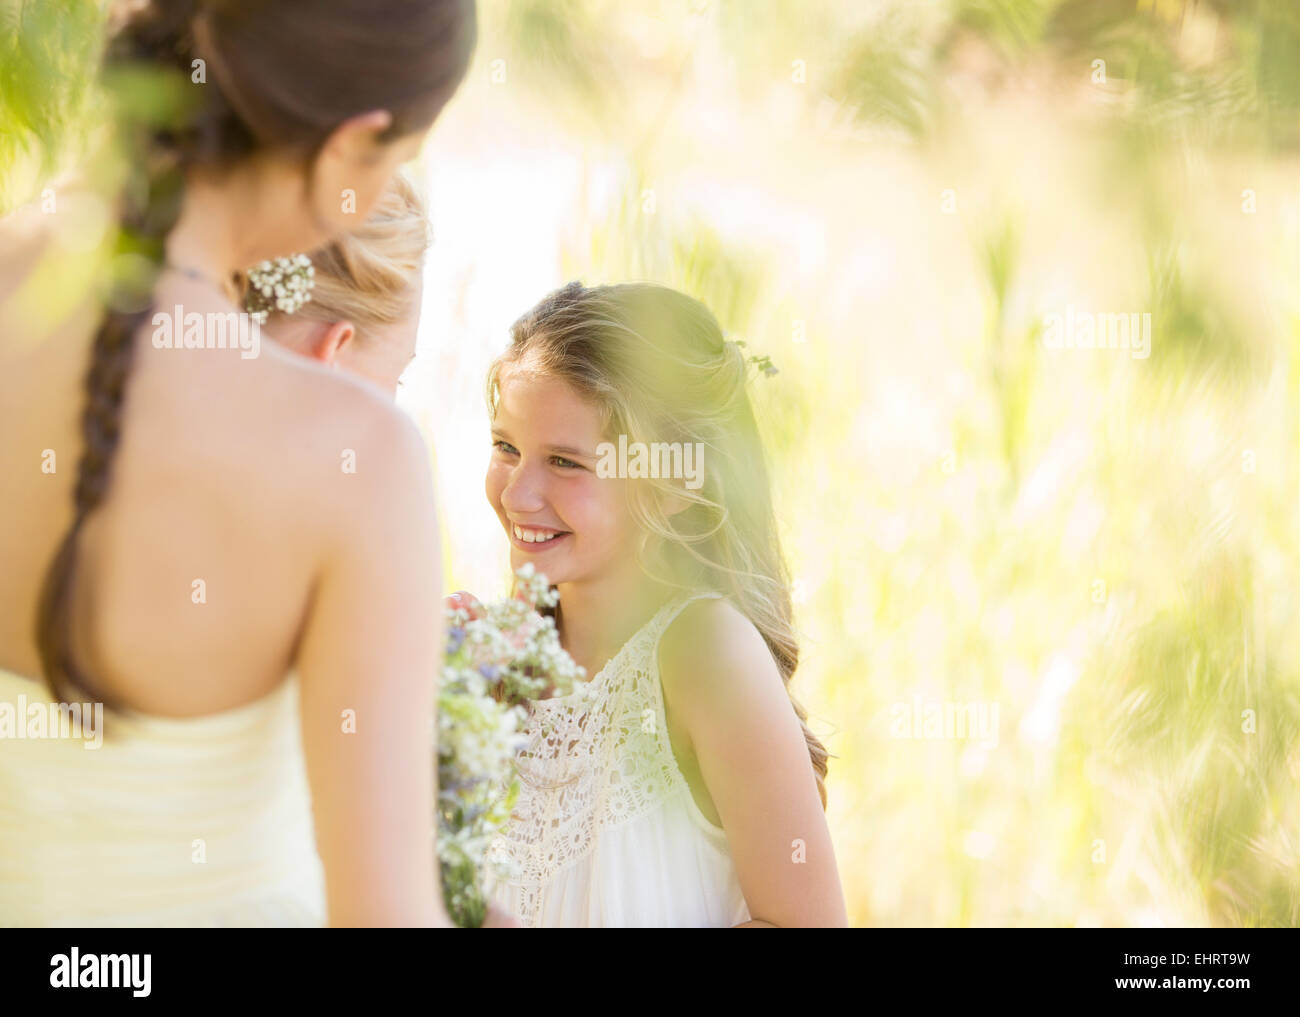 Brautjungfer mit Blumenstrauß während Hochzeitsfeier im Garten Stockfoto